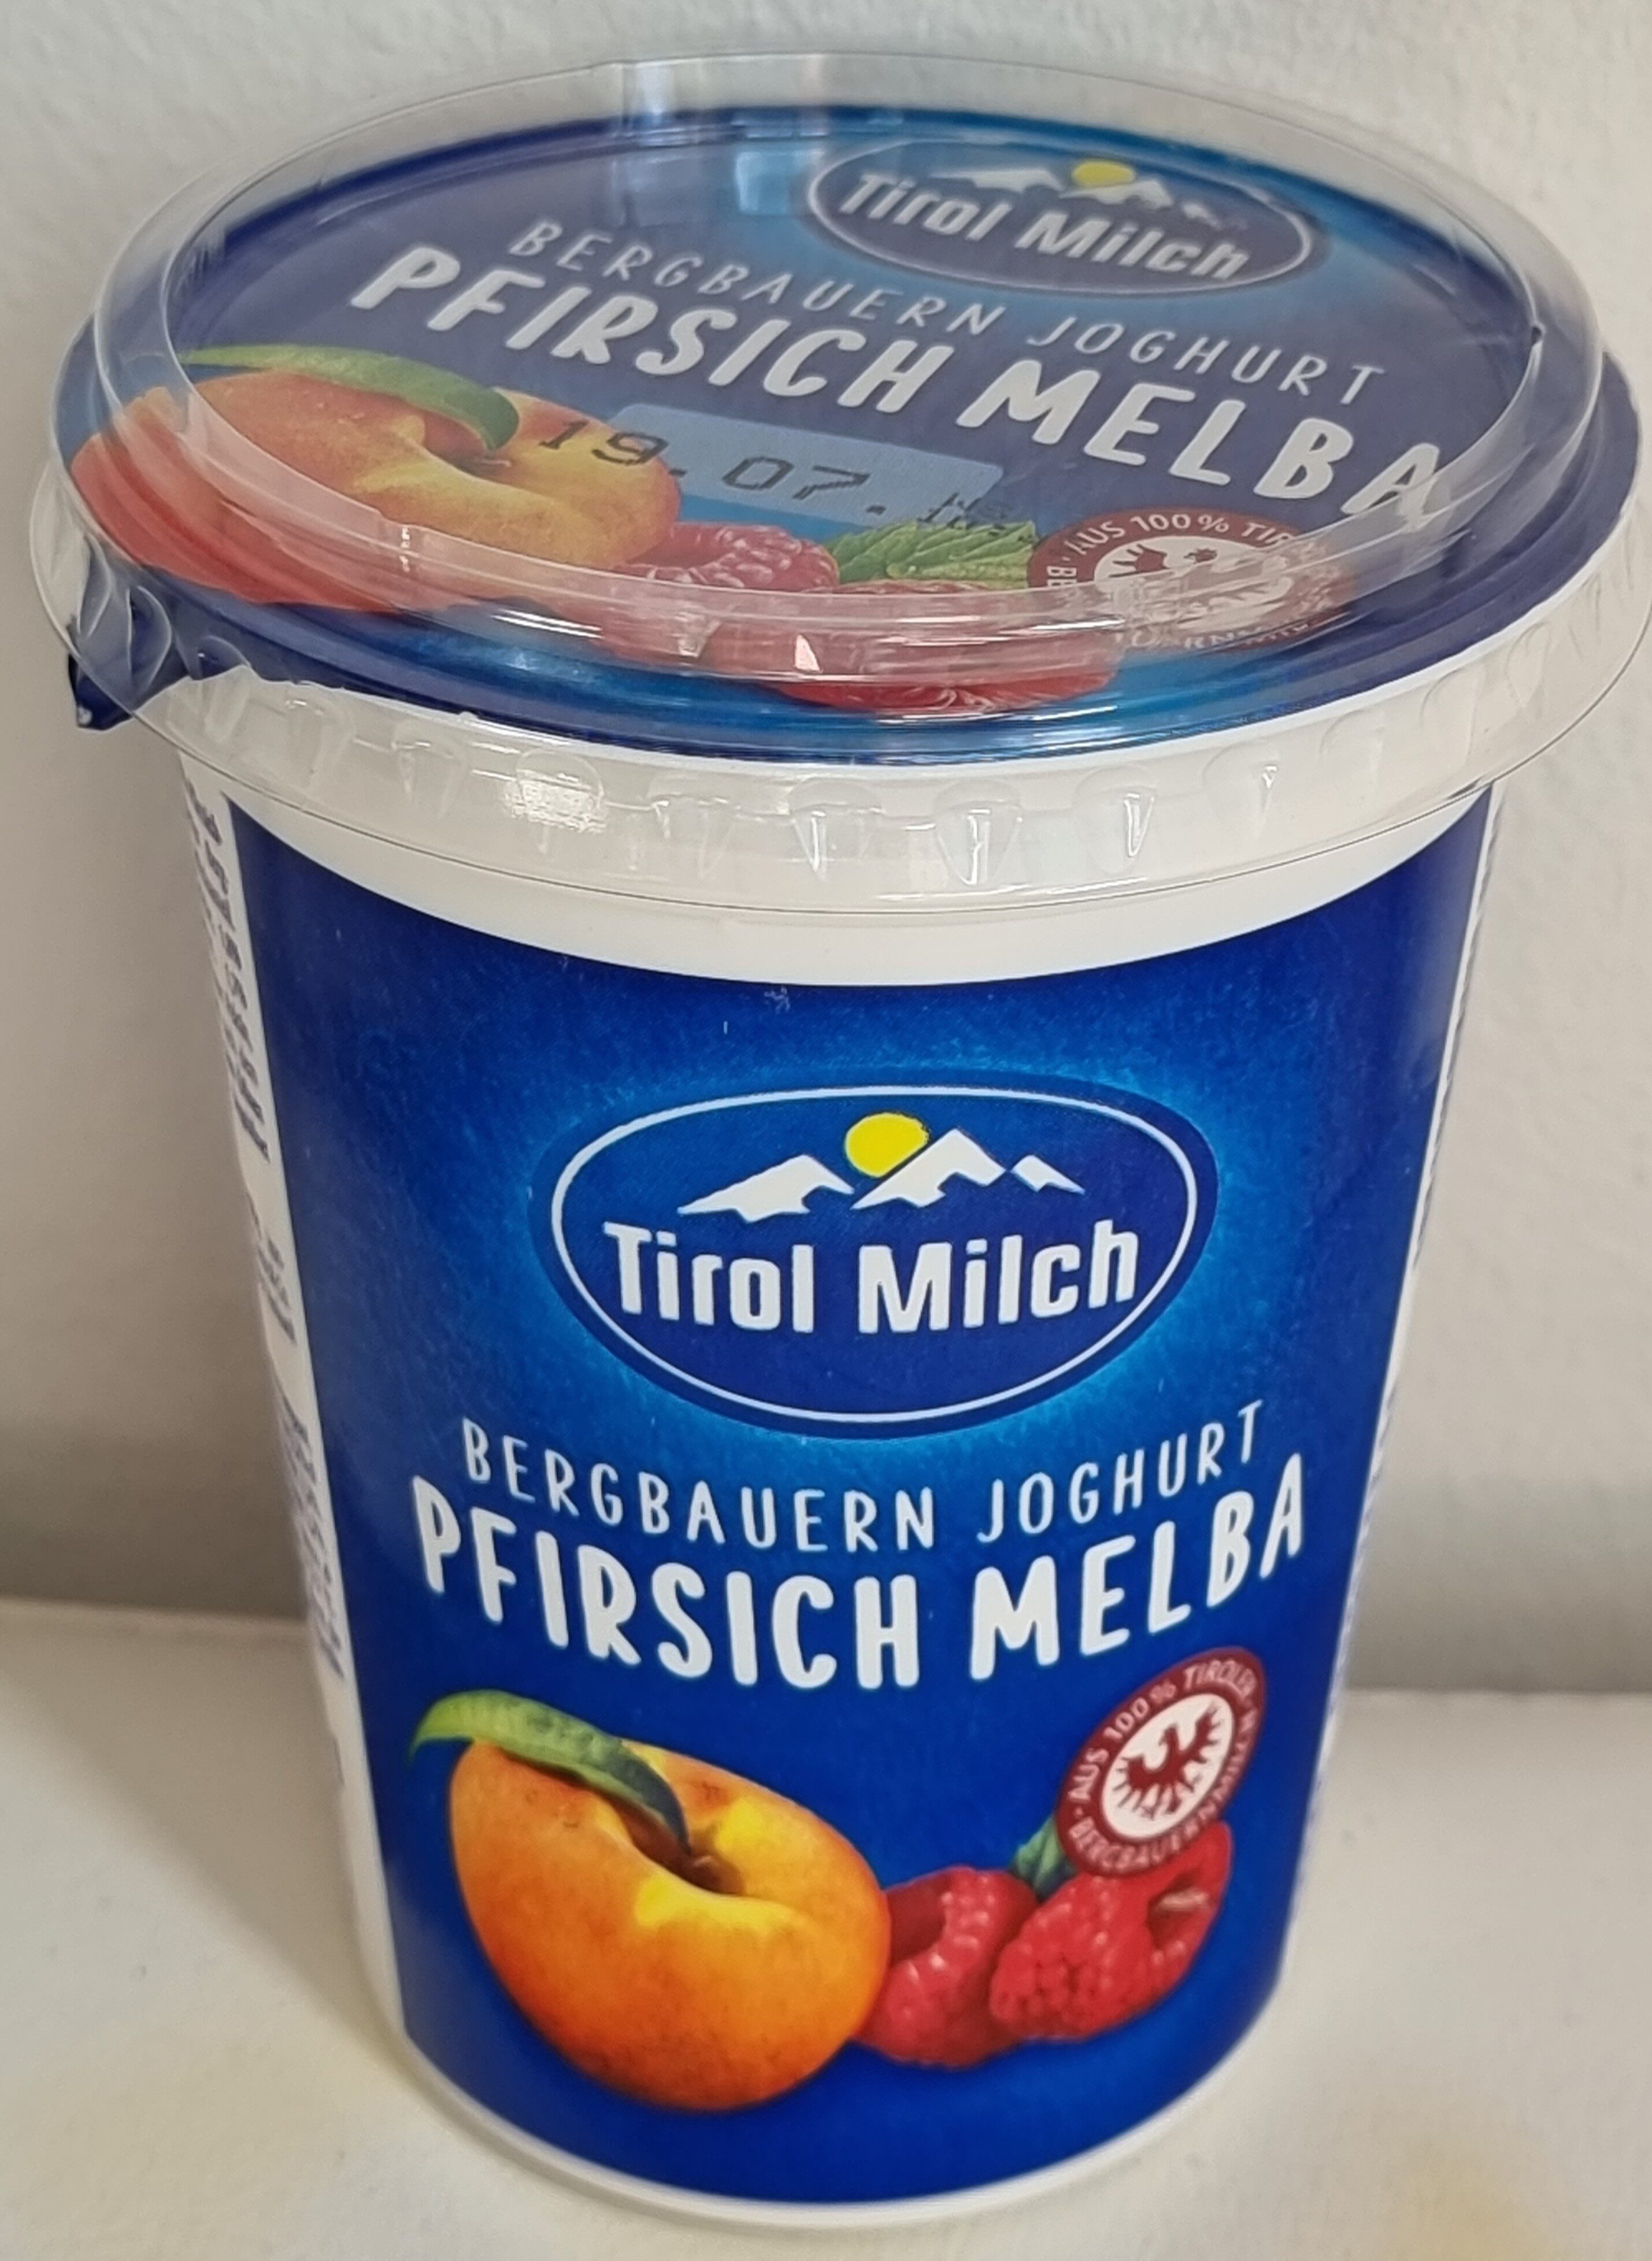 Bergbauern-Joghurt Pfirsich Melba - Product - de